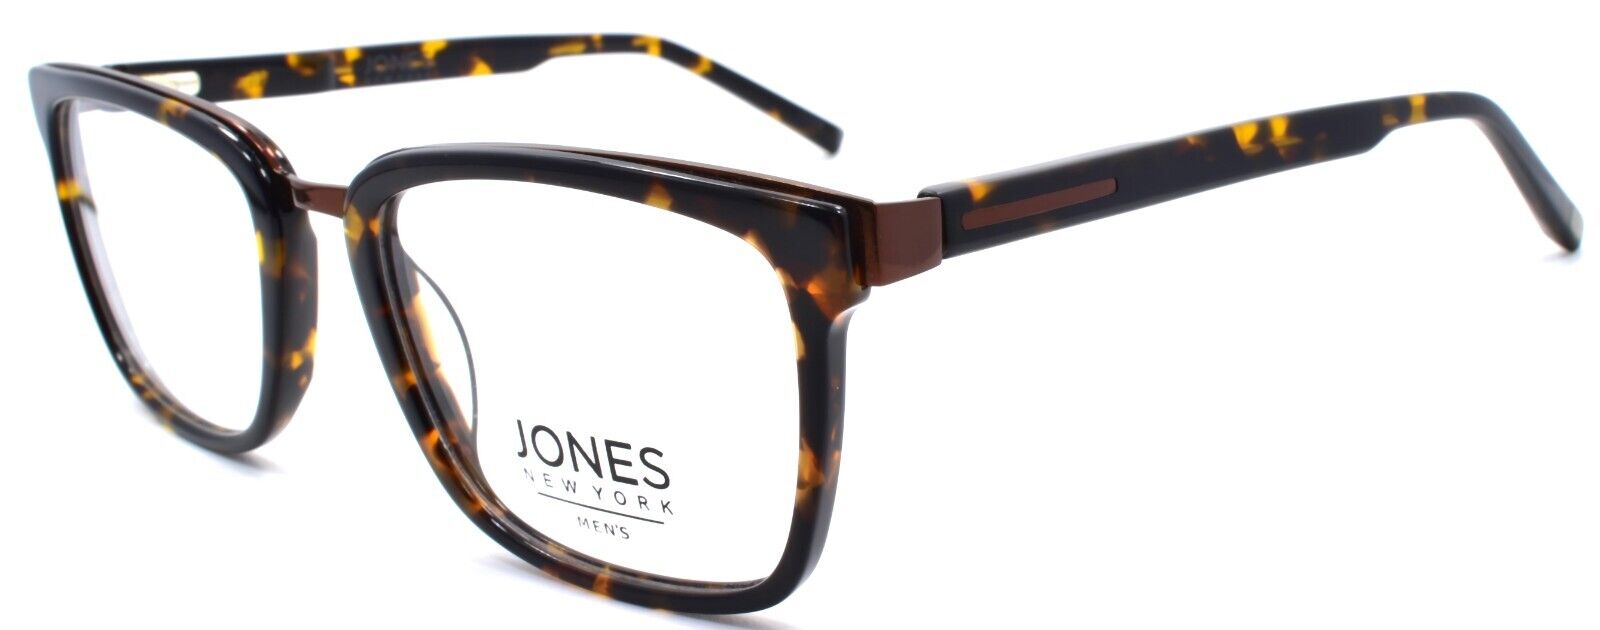 1-Jones New York JNY J529 Men's Eyeglasses Frames 53-20-145 Tortoise-751286310580-IKSpecs